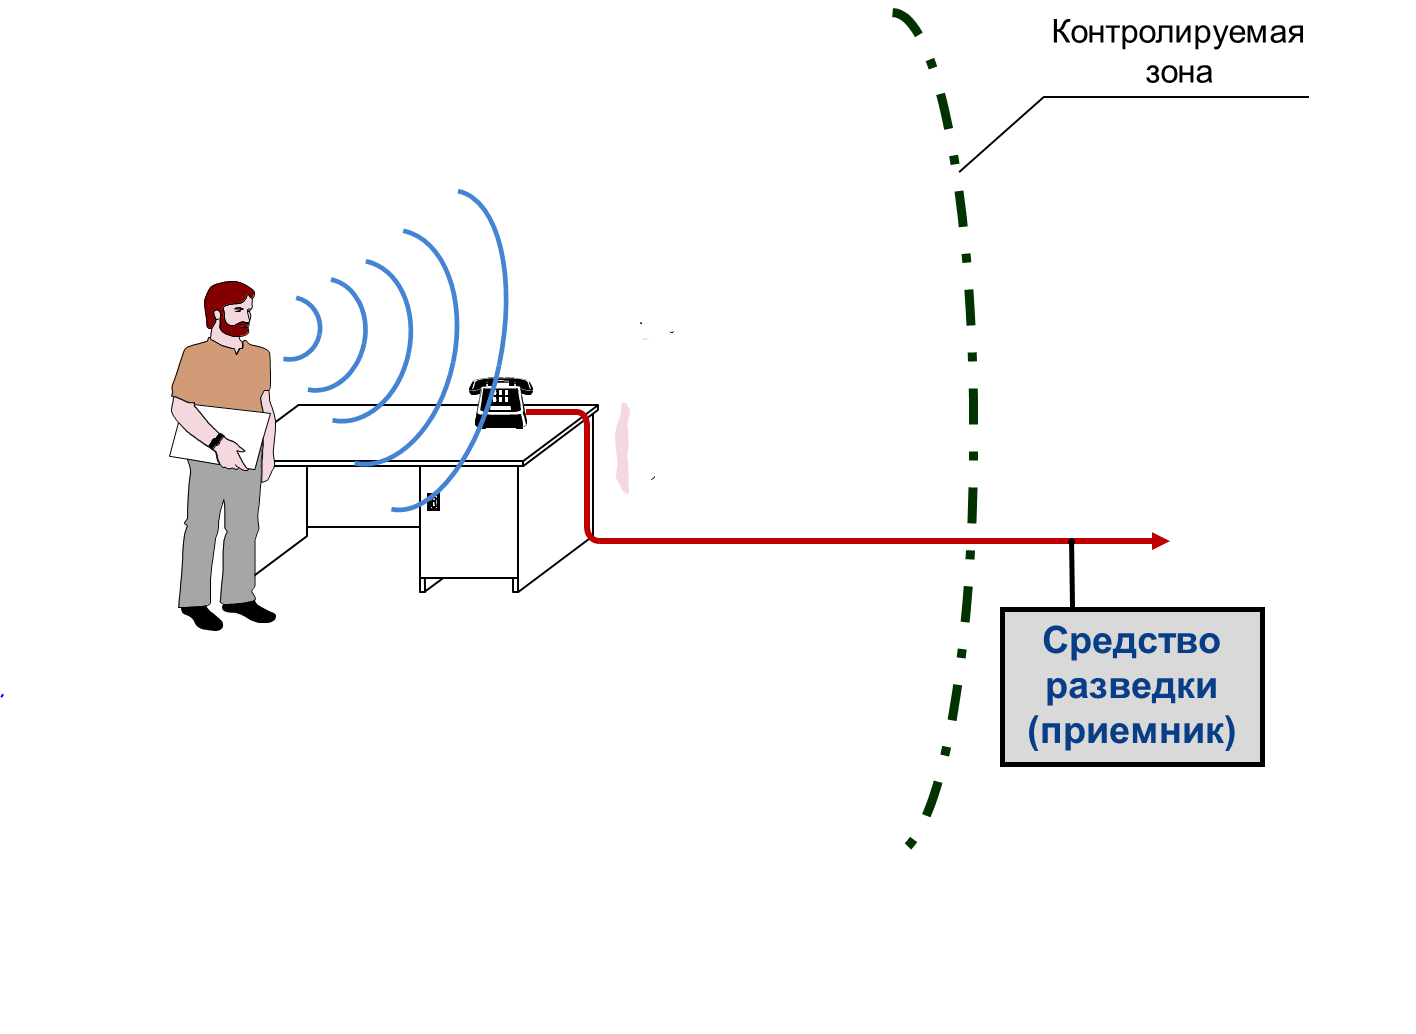 Схема контролируемой зоны. Защита информации от утечки. Схема контролируемой зоны объекта. Схема акустоэлектрического канала утечки информации.